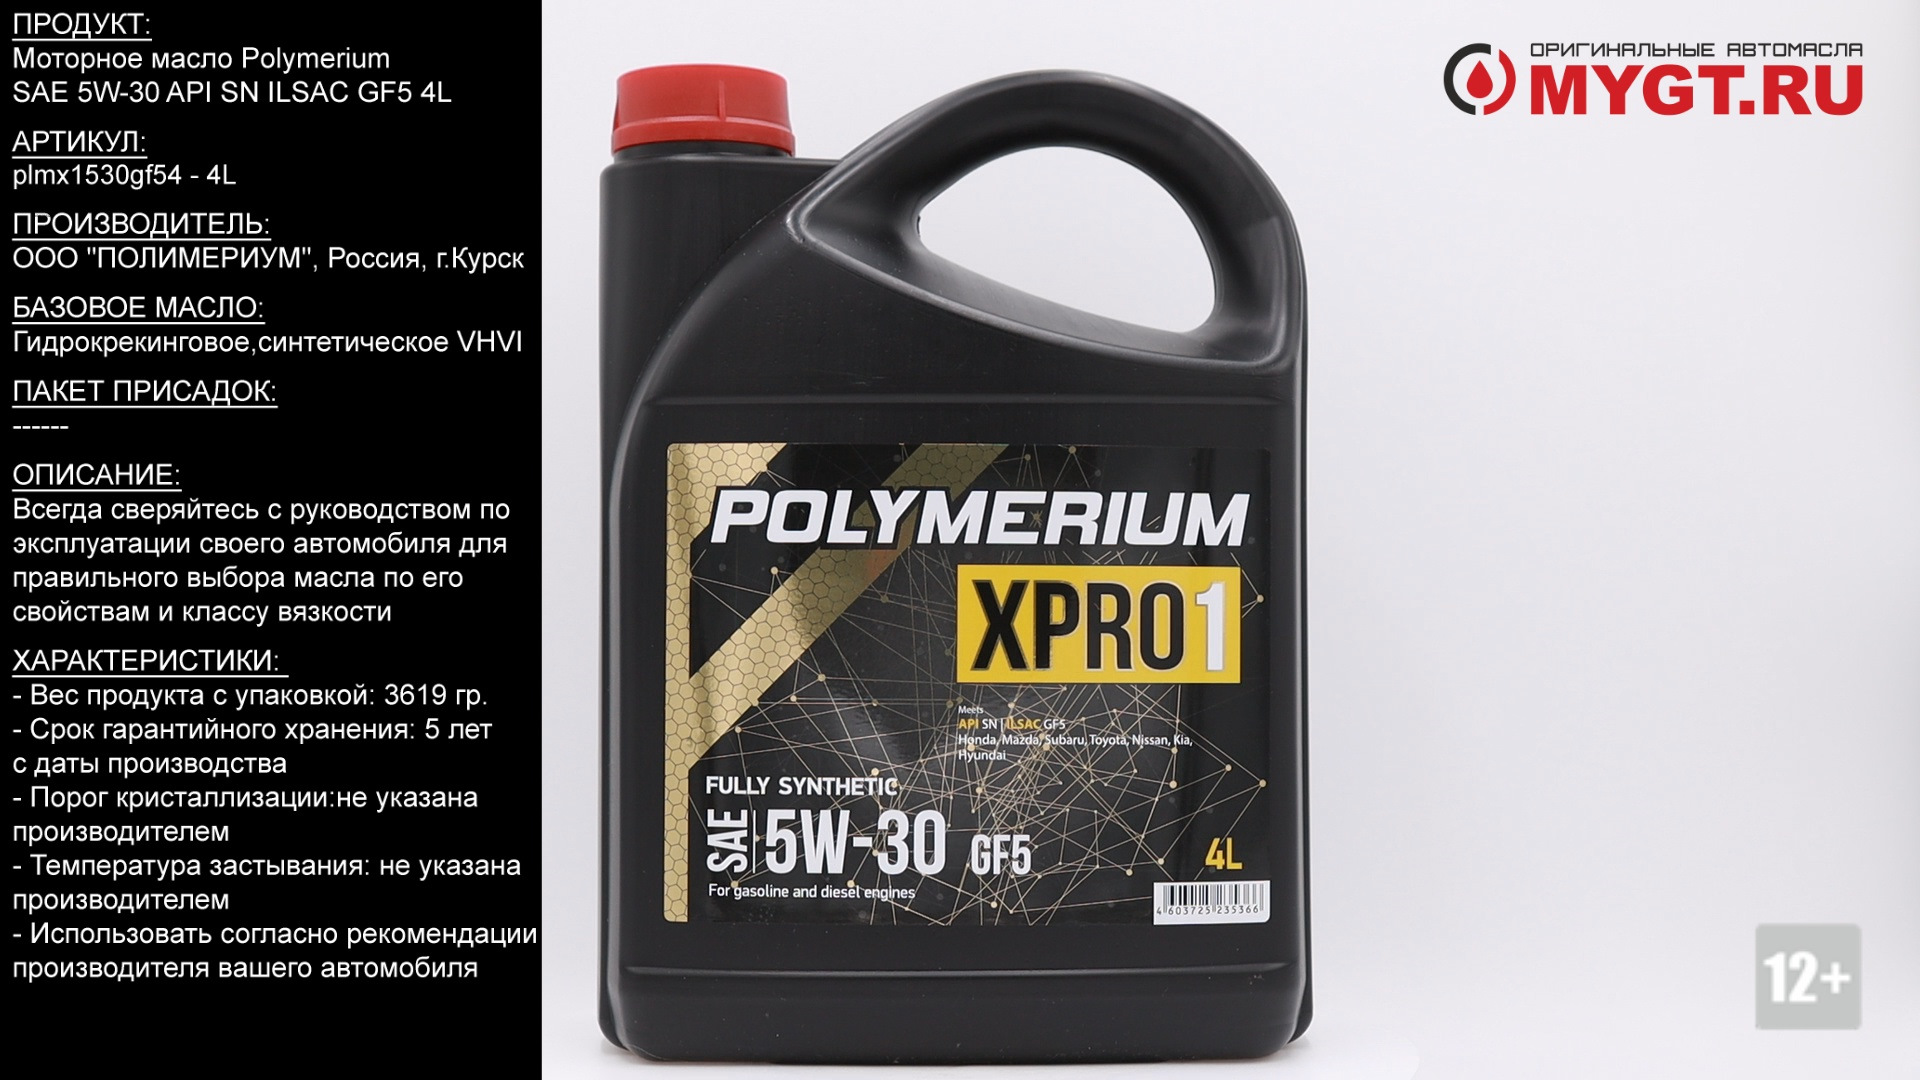 Моторное масло полимериум отзывы. Полимериум 5w30 xpro1. Polymerium xpro2 5w-30 gf5. Моторное масло полимериум 5w30. Polymerium Pro 5w-30 a5 SN 4l артикул.